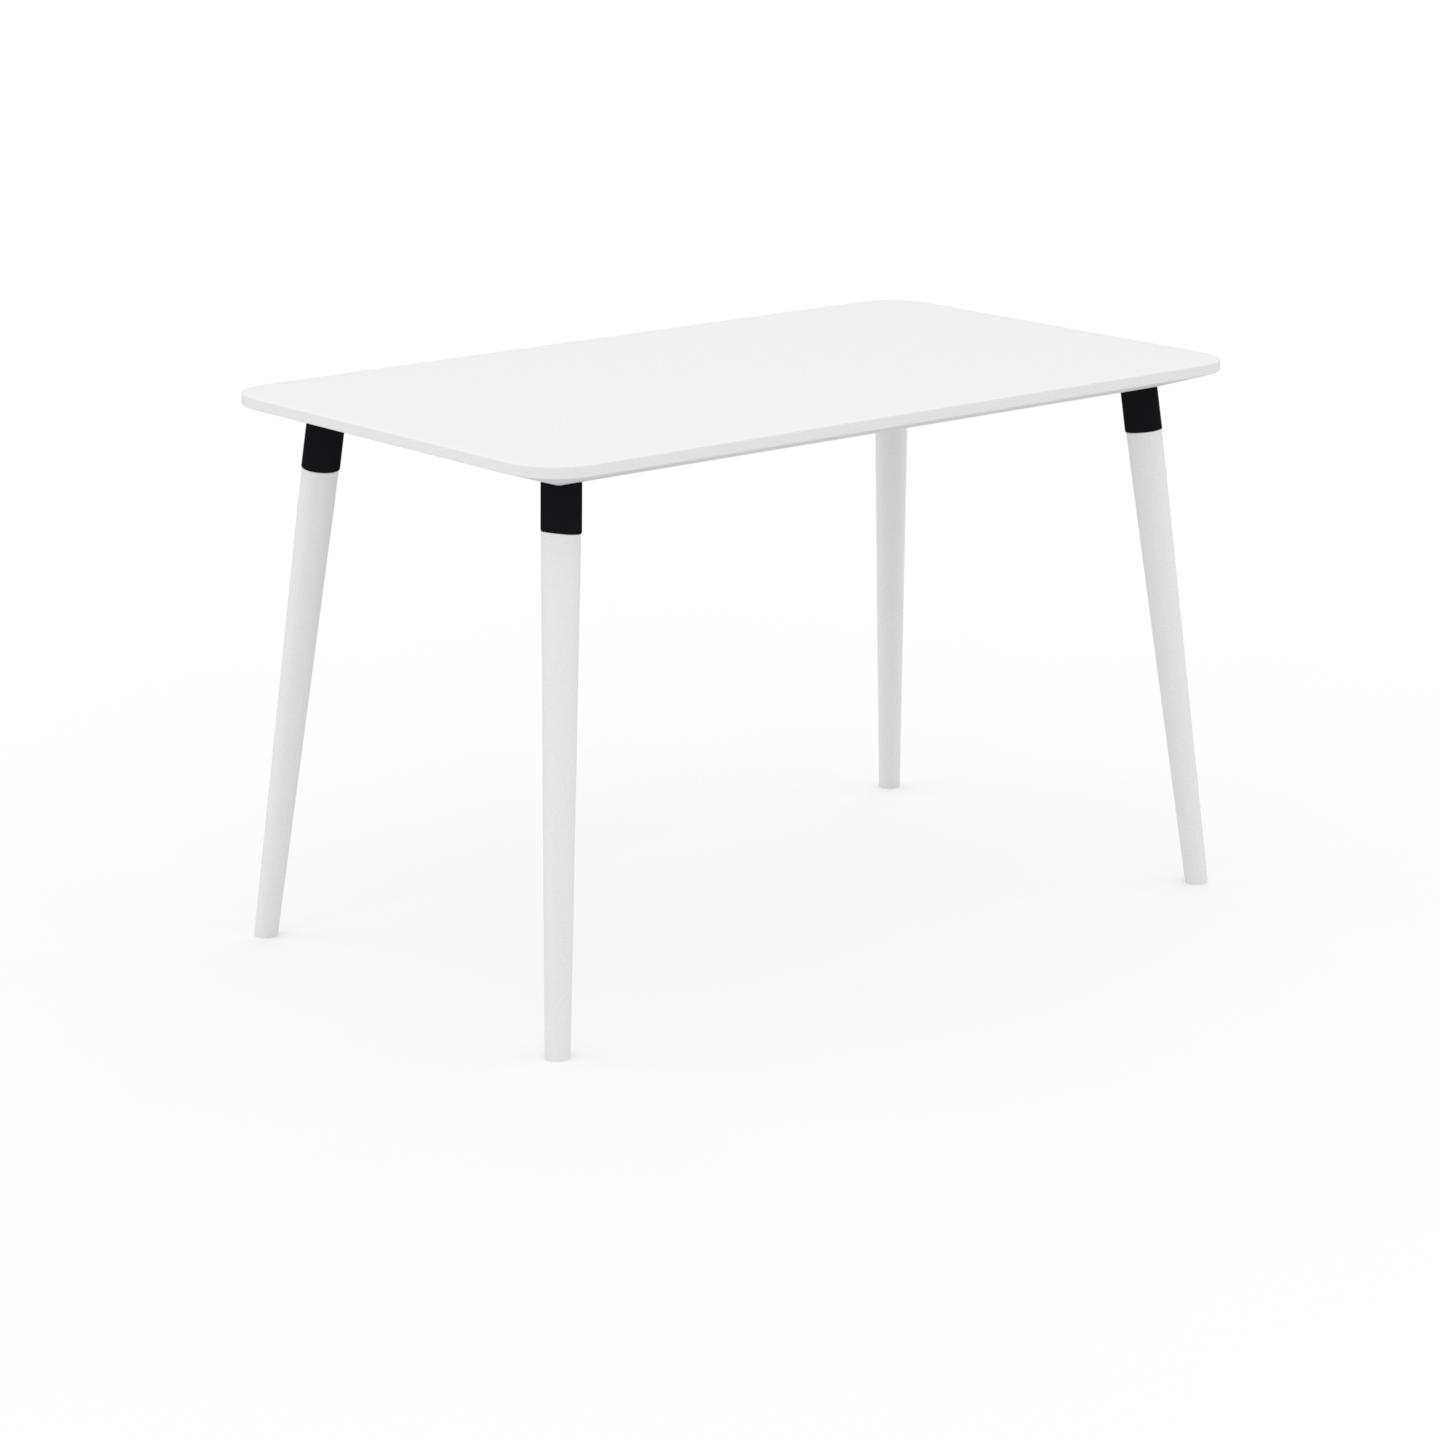 MYCS Schreibtisch Massivholz Weiß - Moderner Massivholz-Schreibtisch: Einzigartiges Design - 120 x 75 x 70 cm, konfigurierbar